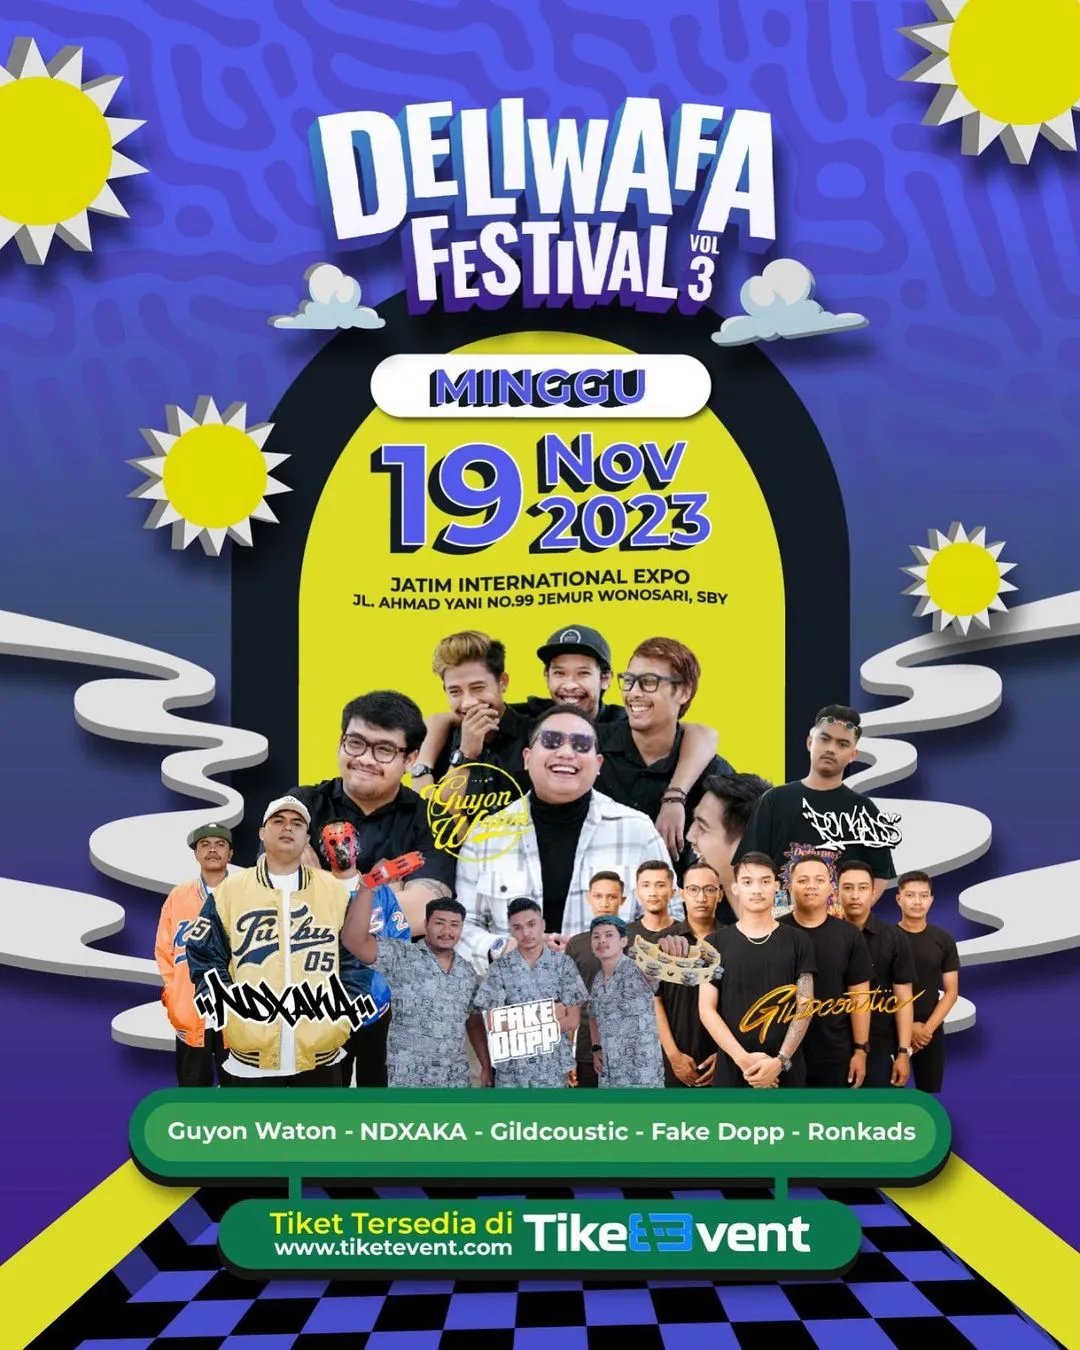 Siap Ambyar bersama Guyon Waton dan NDX AKA di Deliwafa Festival 2023 Vol 3. Simak jadwal dan cara beli tiketnya!